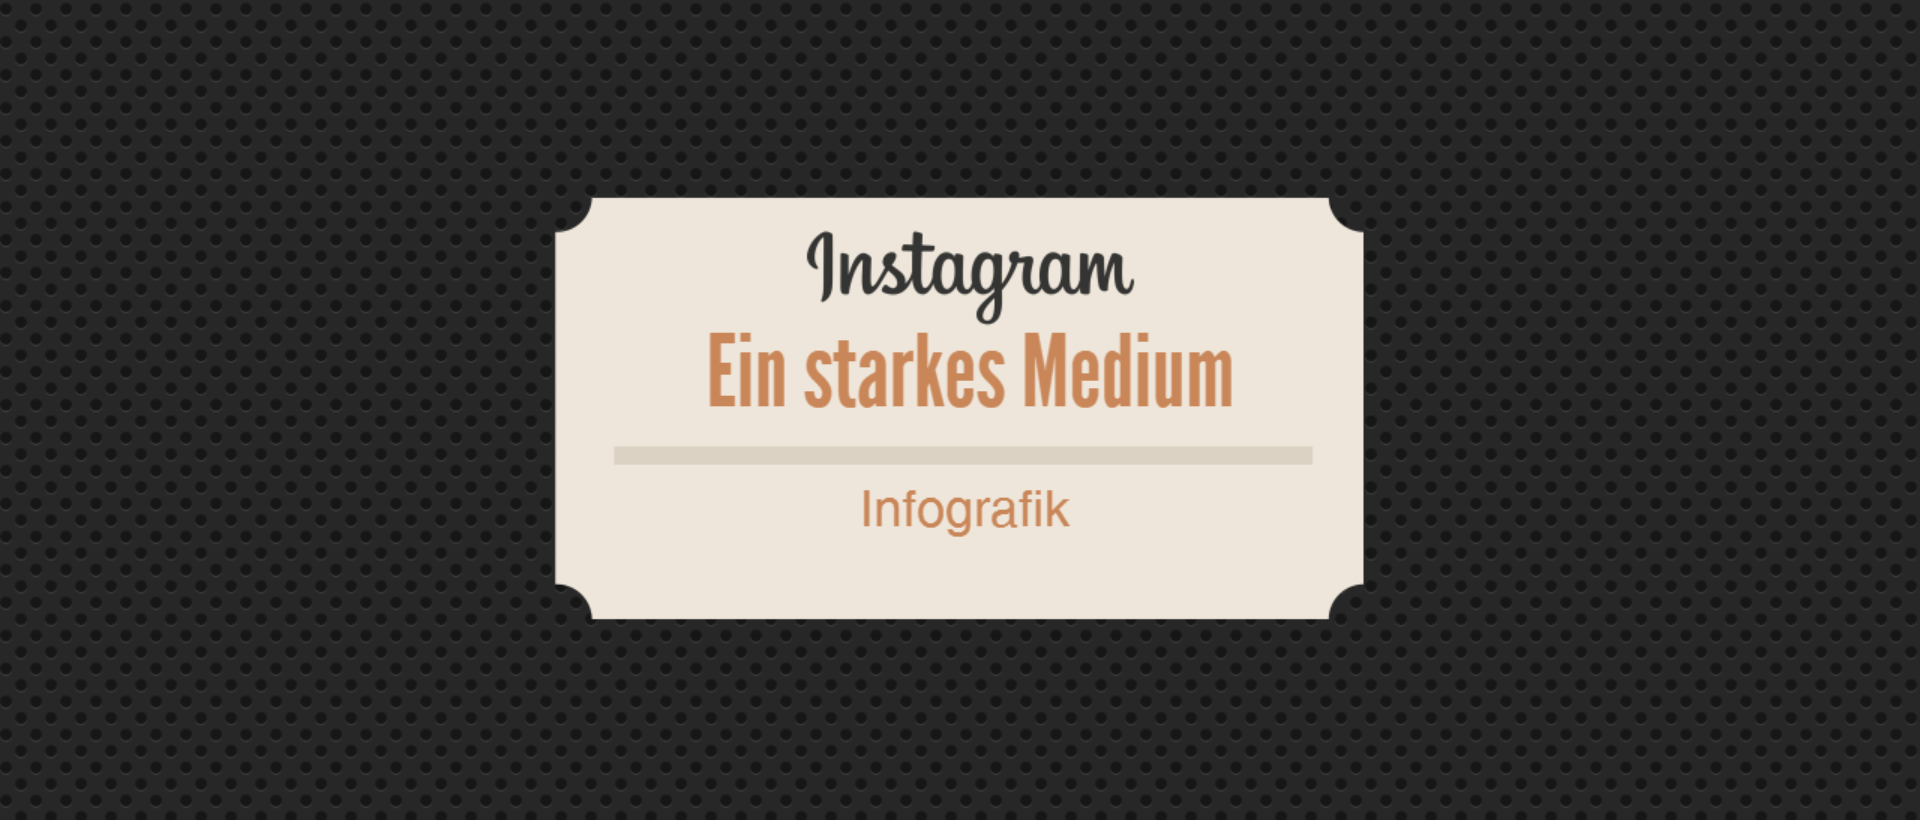 Instagram Infografik